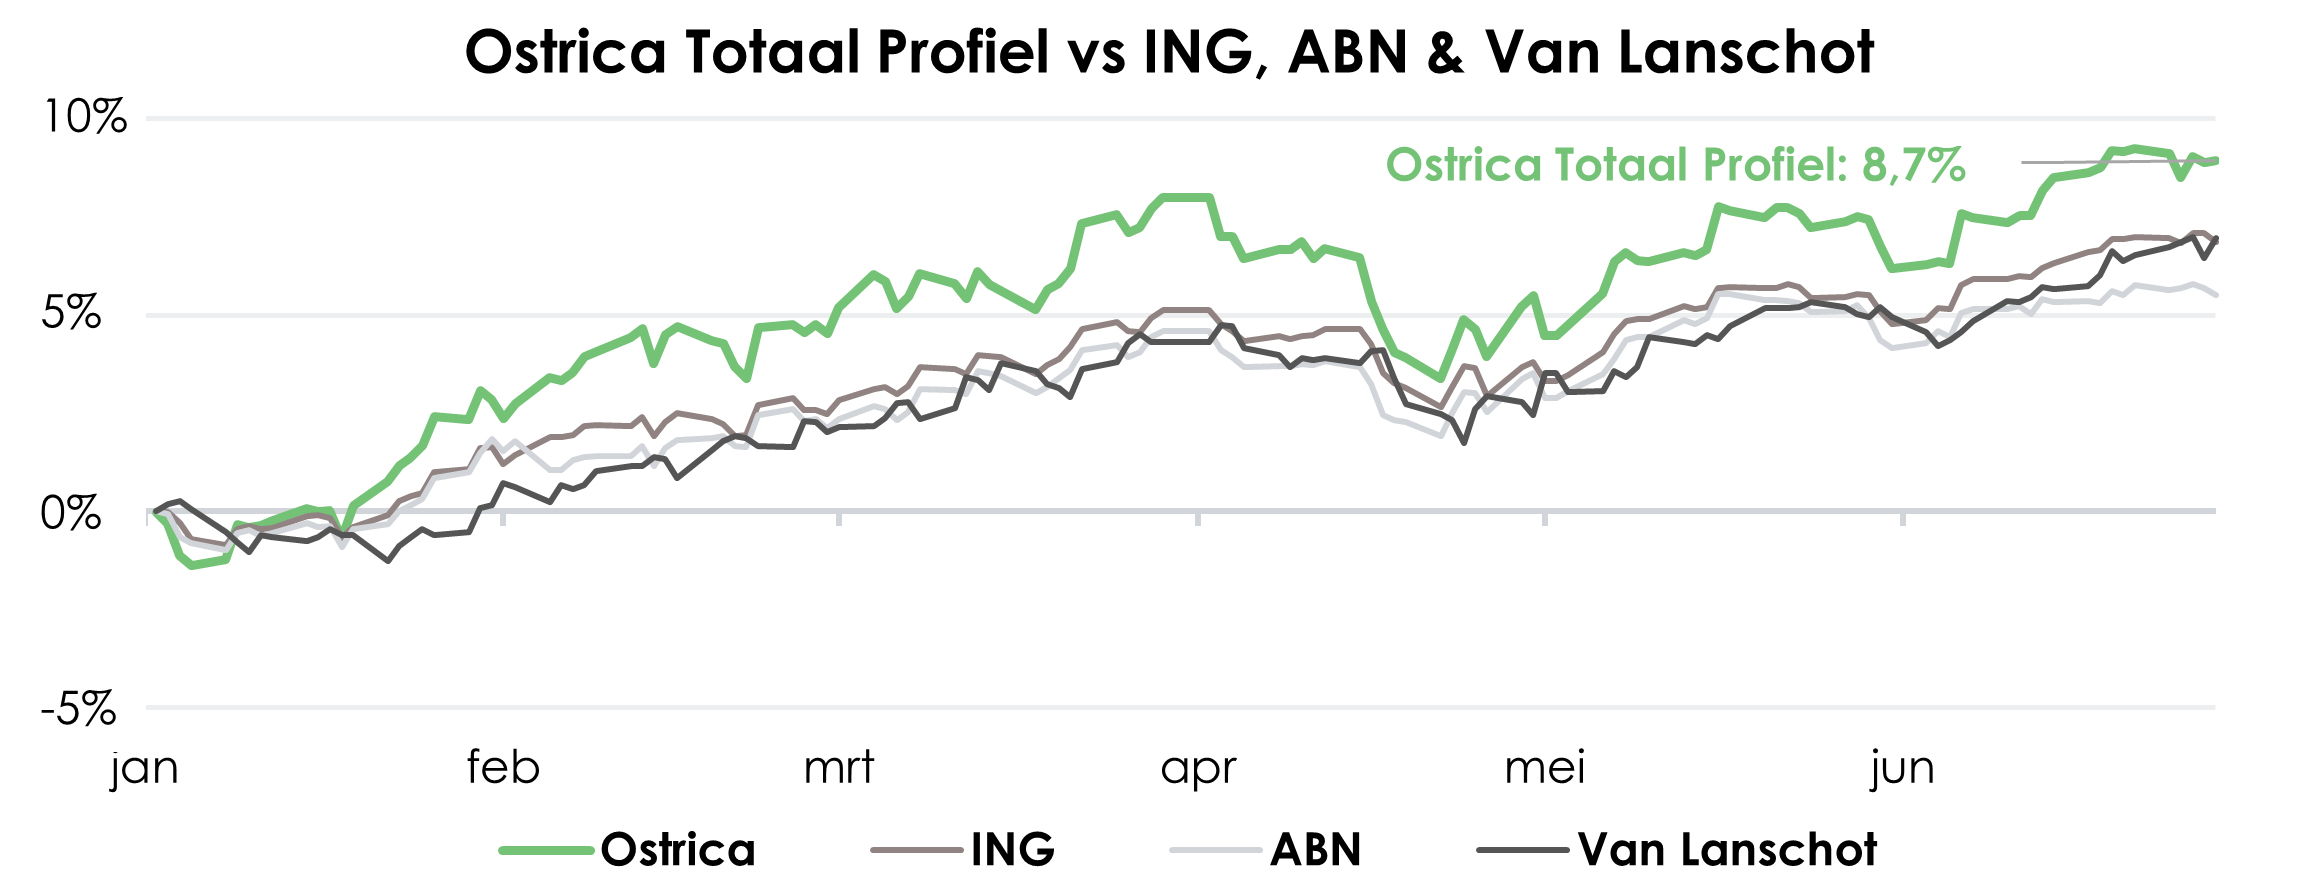 Ostrica Basis Profiel vergeleken met ING, ABN & Van Lanschot | Ostrica Vermogensbeheer